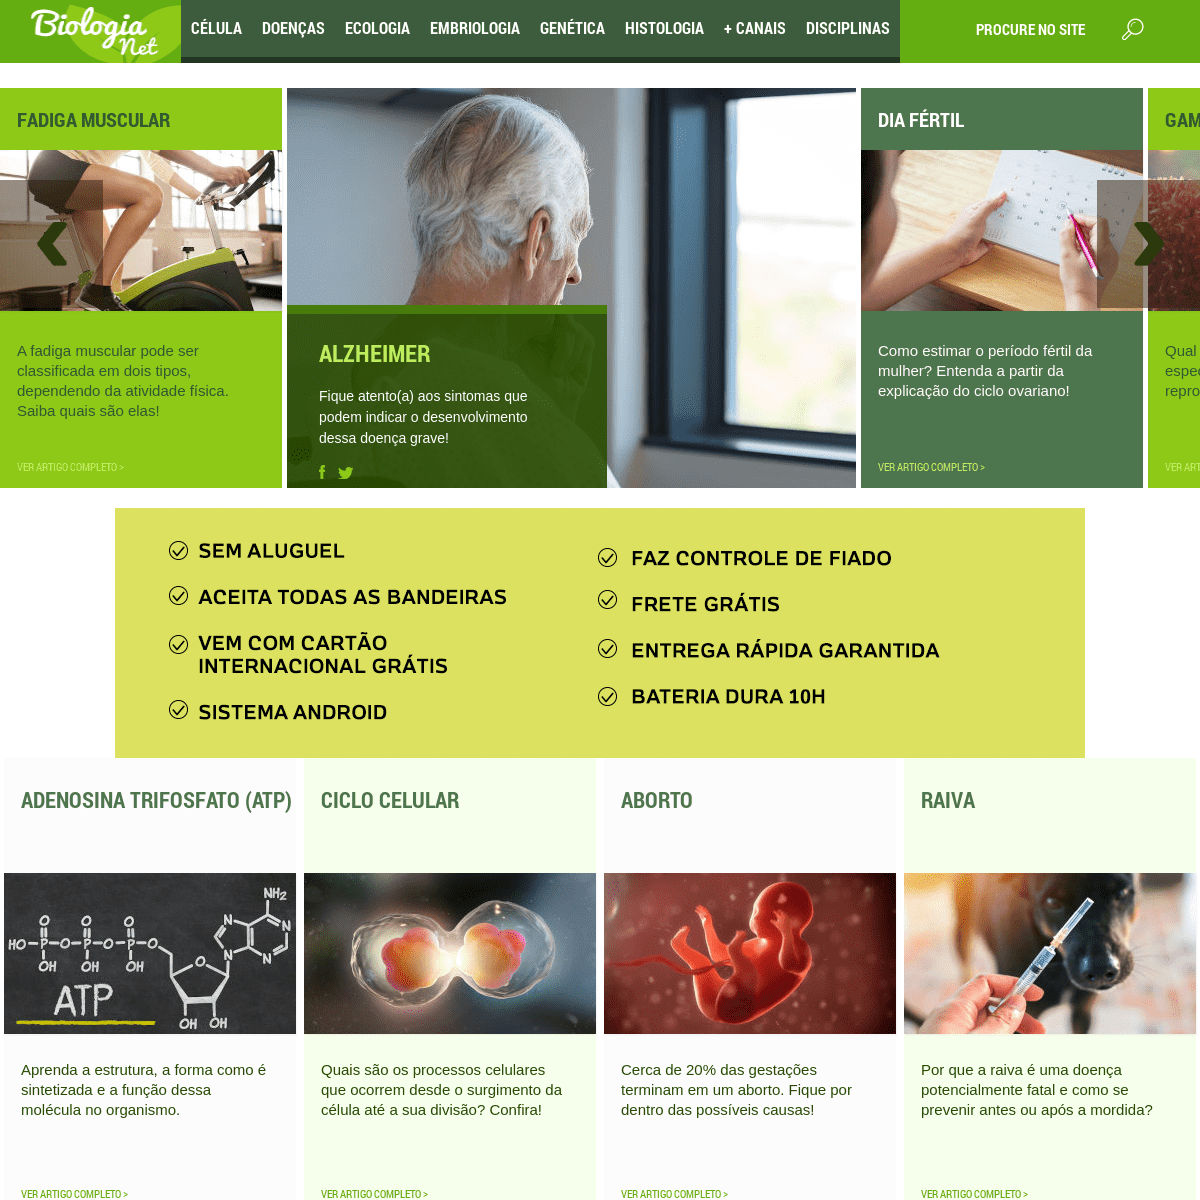 A complete backup of biologianet.uol.com.br